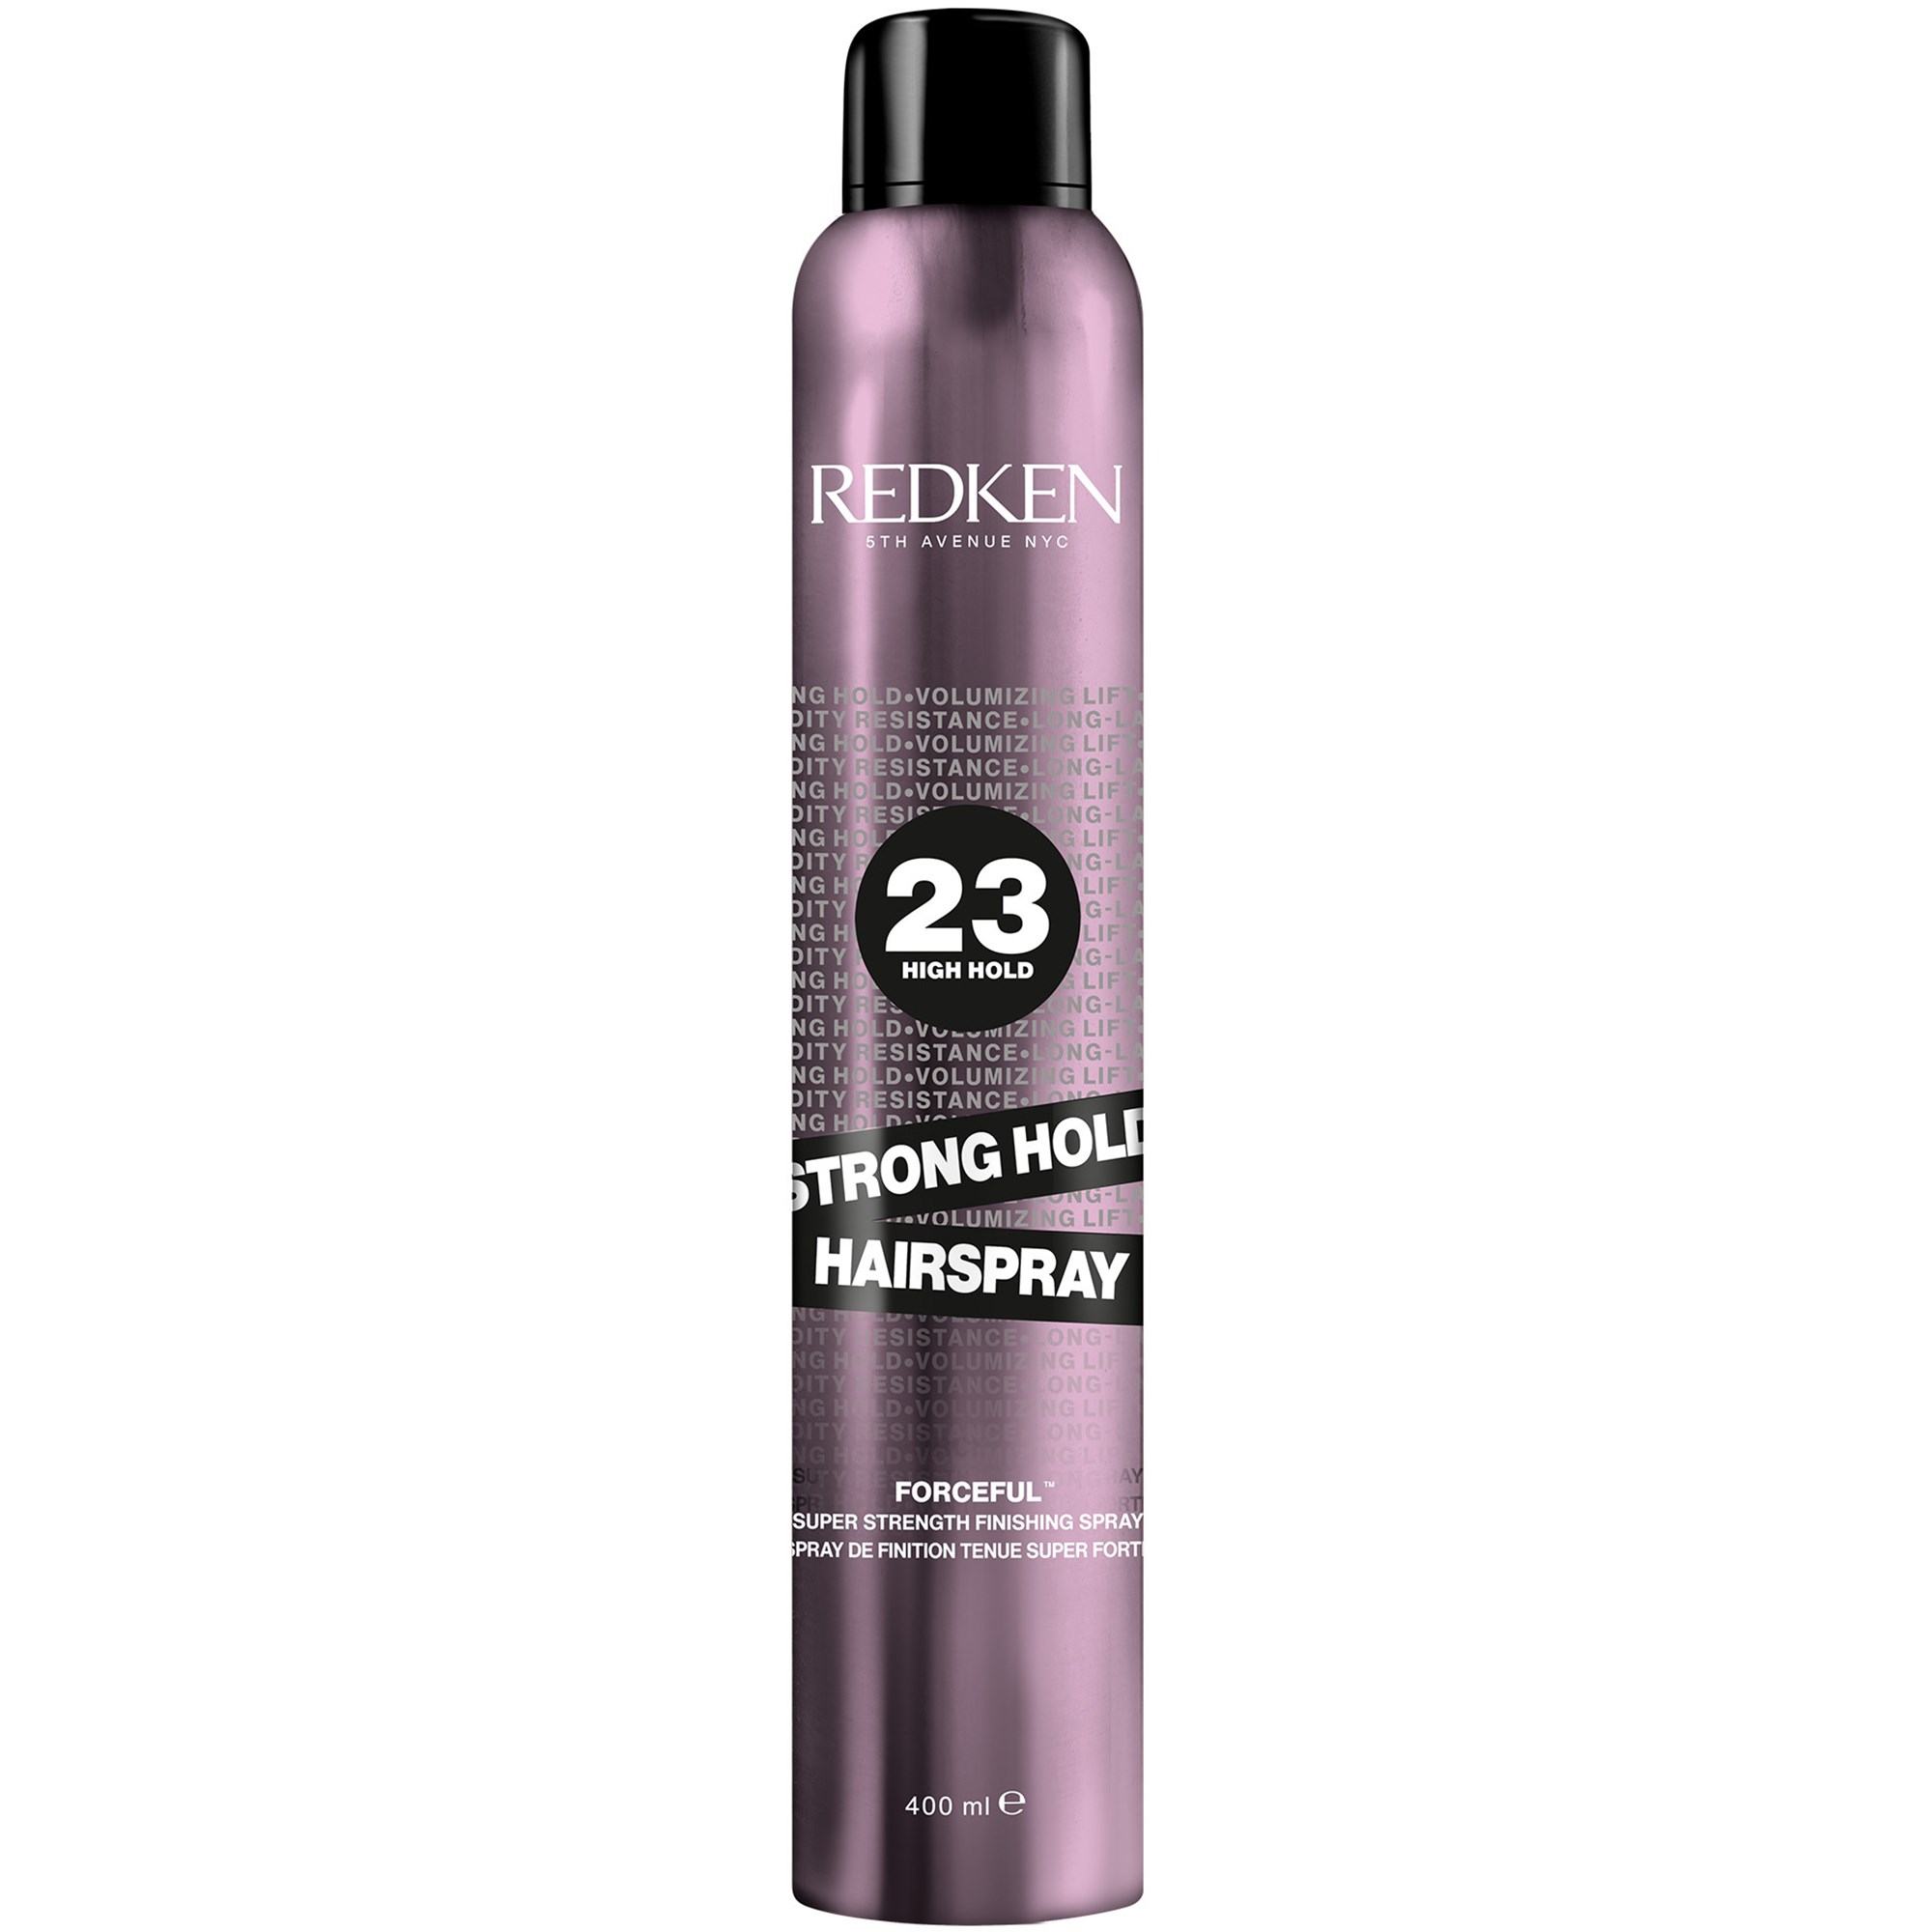 Zdjęcia - Stylizacja włosów Redken Styling Strong Hold Hairspray 400 ml 